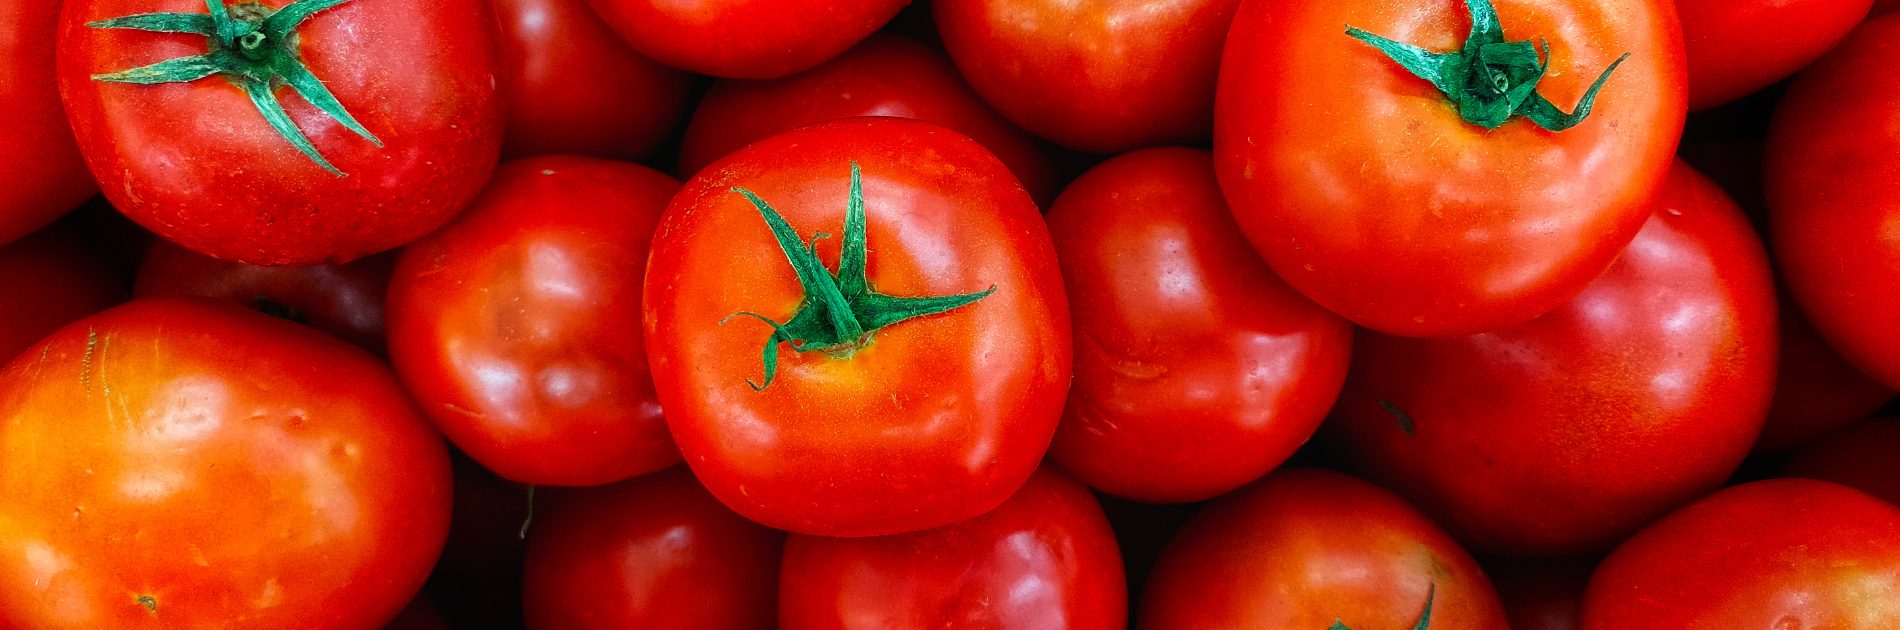 Tomato Intolerance Guide